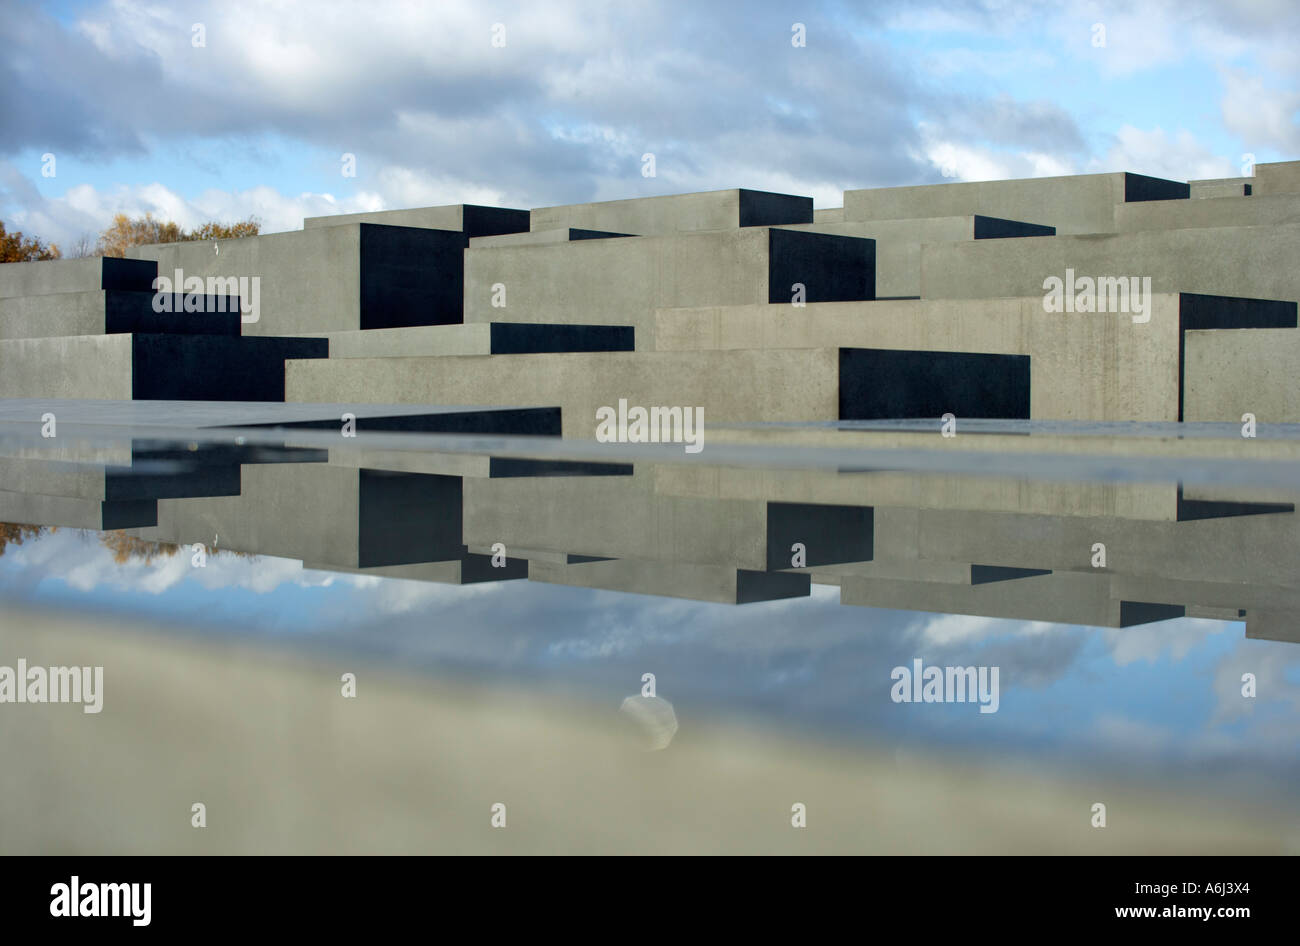 Reflexion der Stele des Holocaust-Denkmals in eine Wasseroberfläche auf eine konkrete Stele, Berlin, Deutschland. Stockfoto